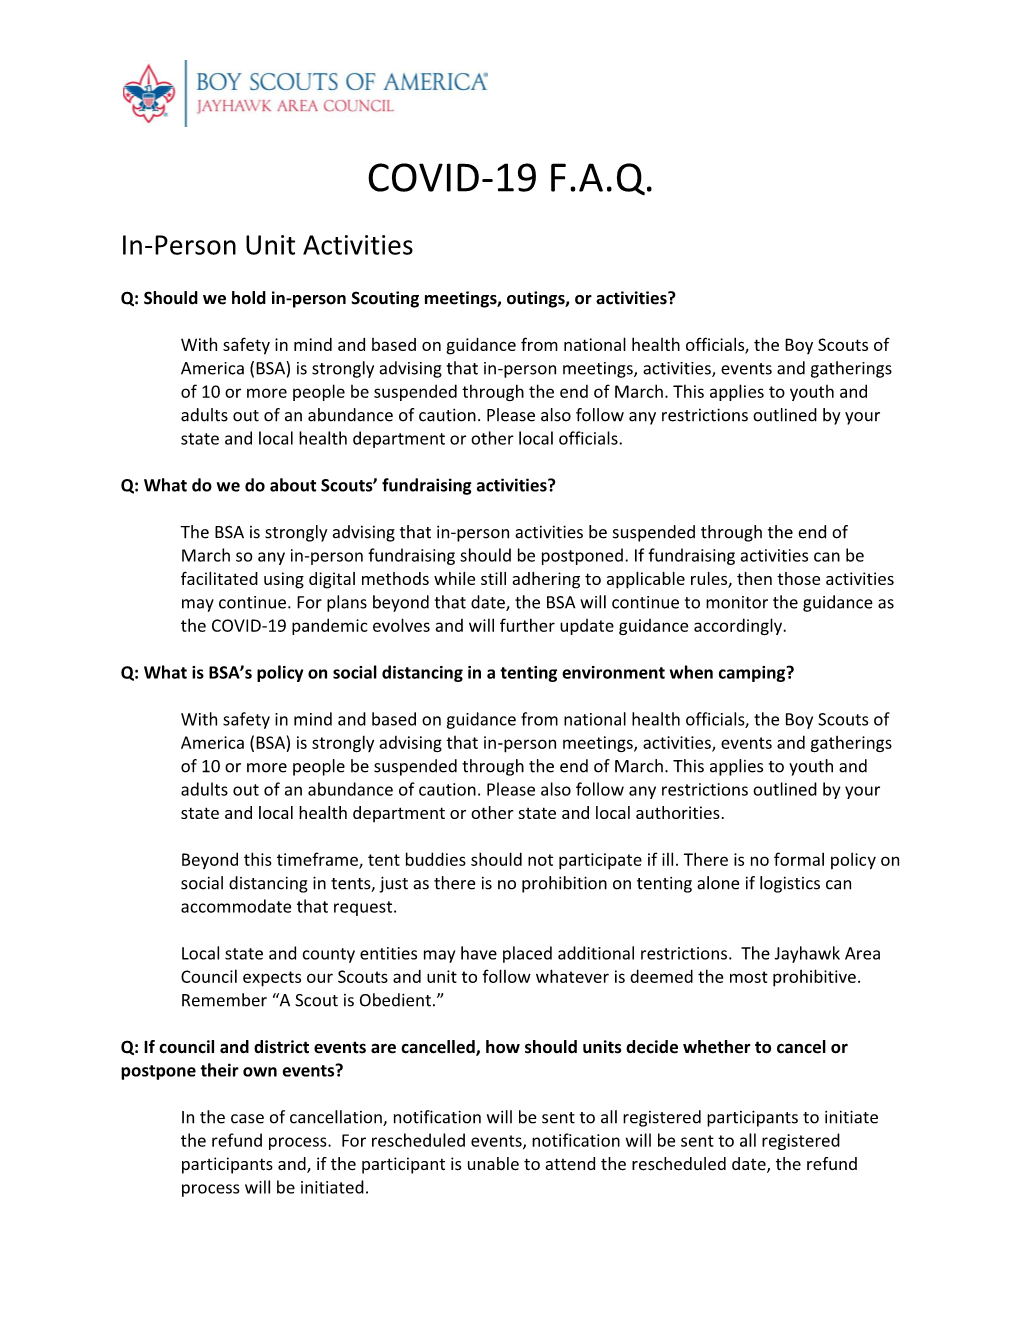 COVID-19 Advancement